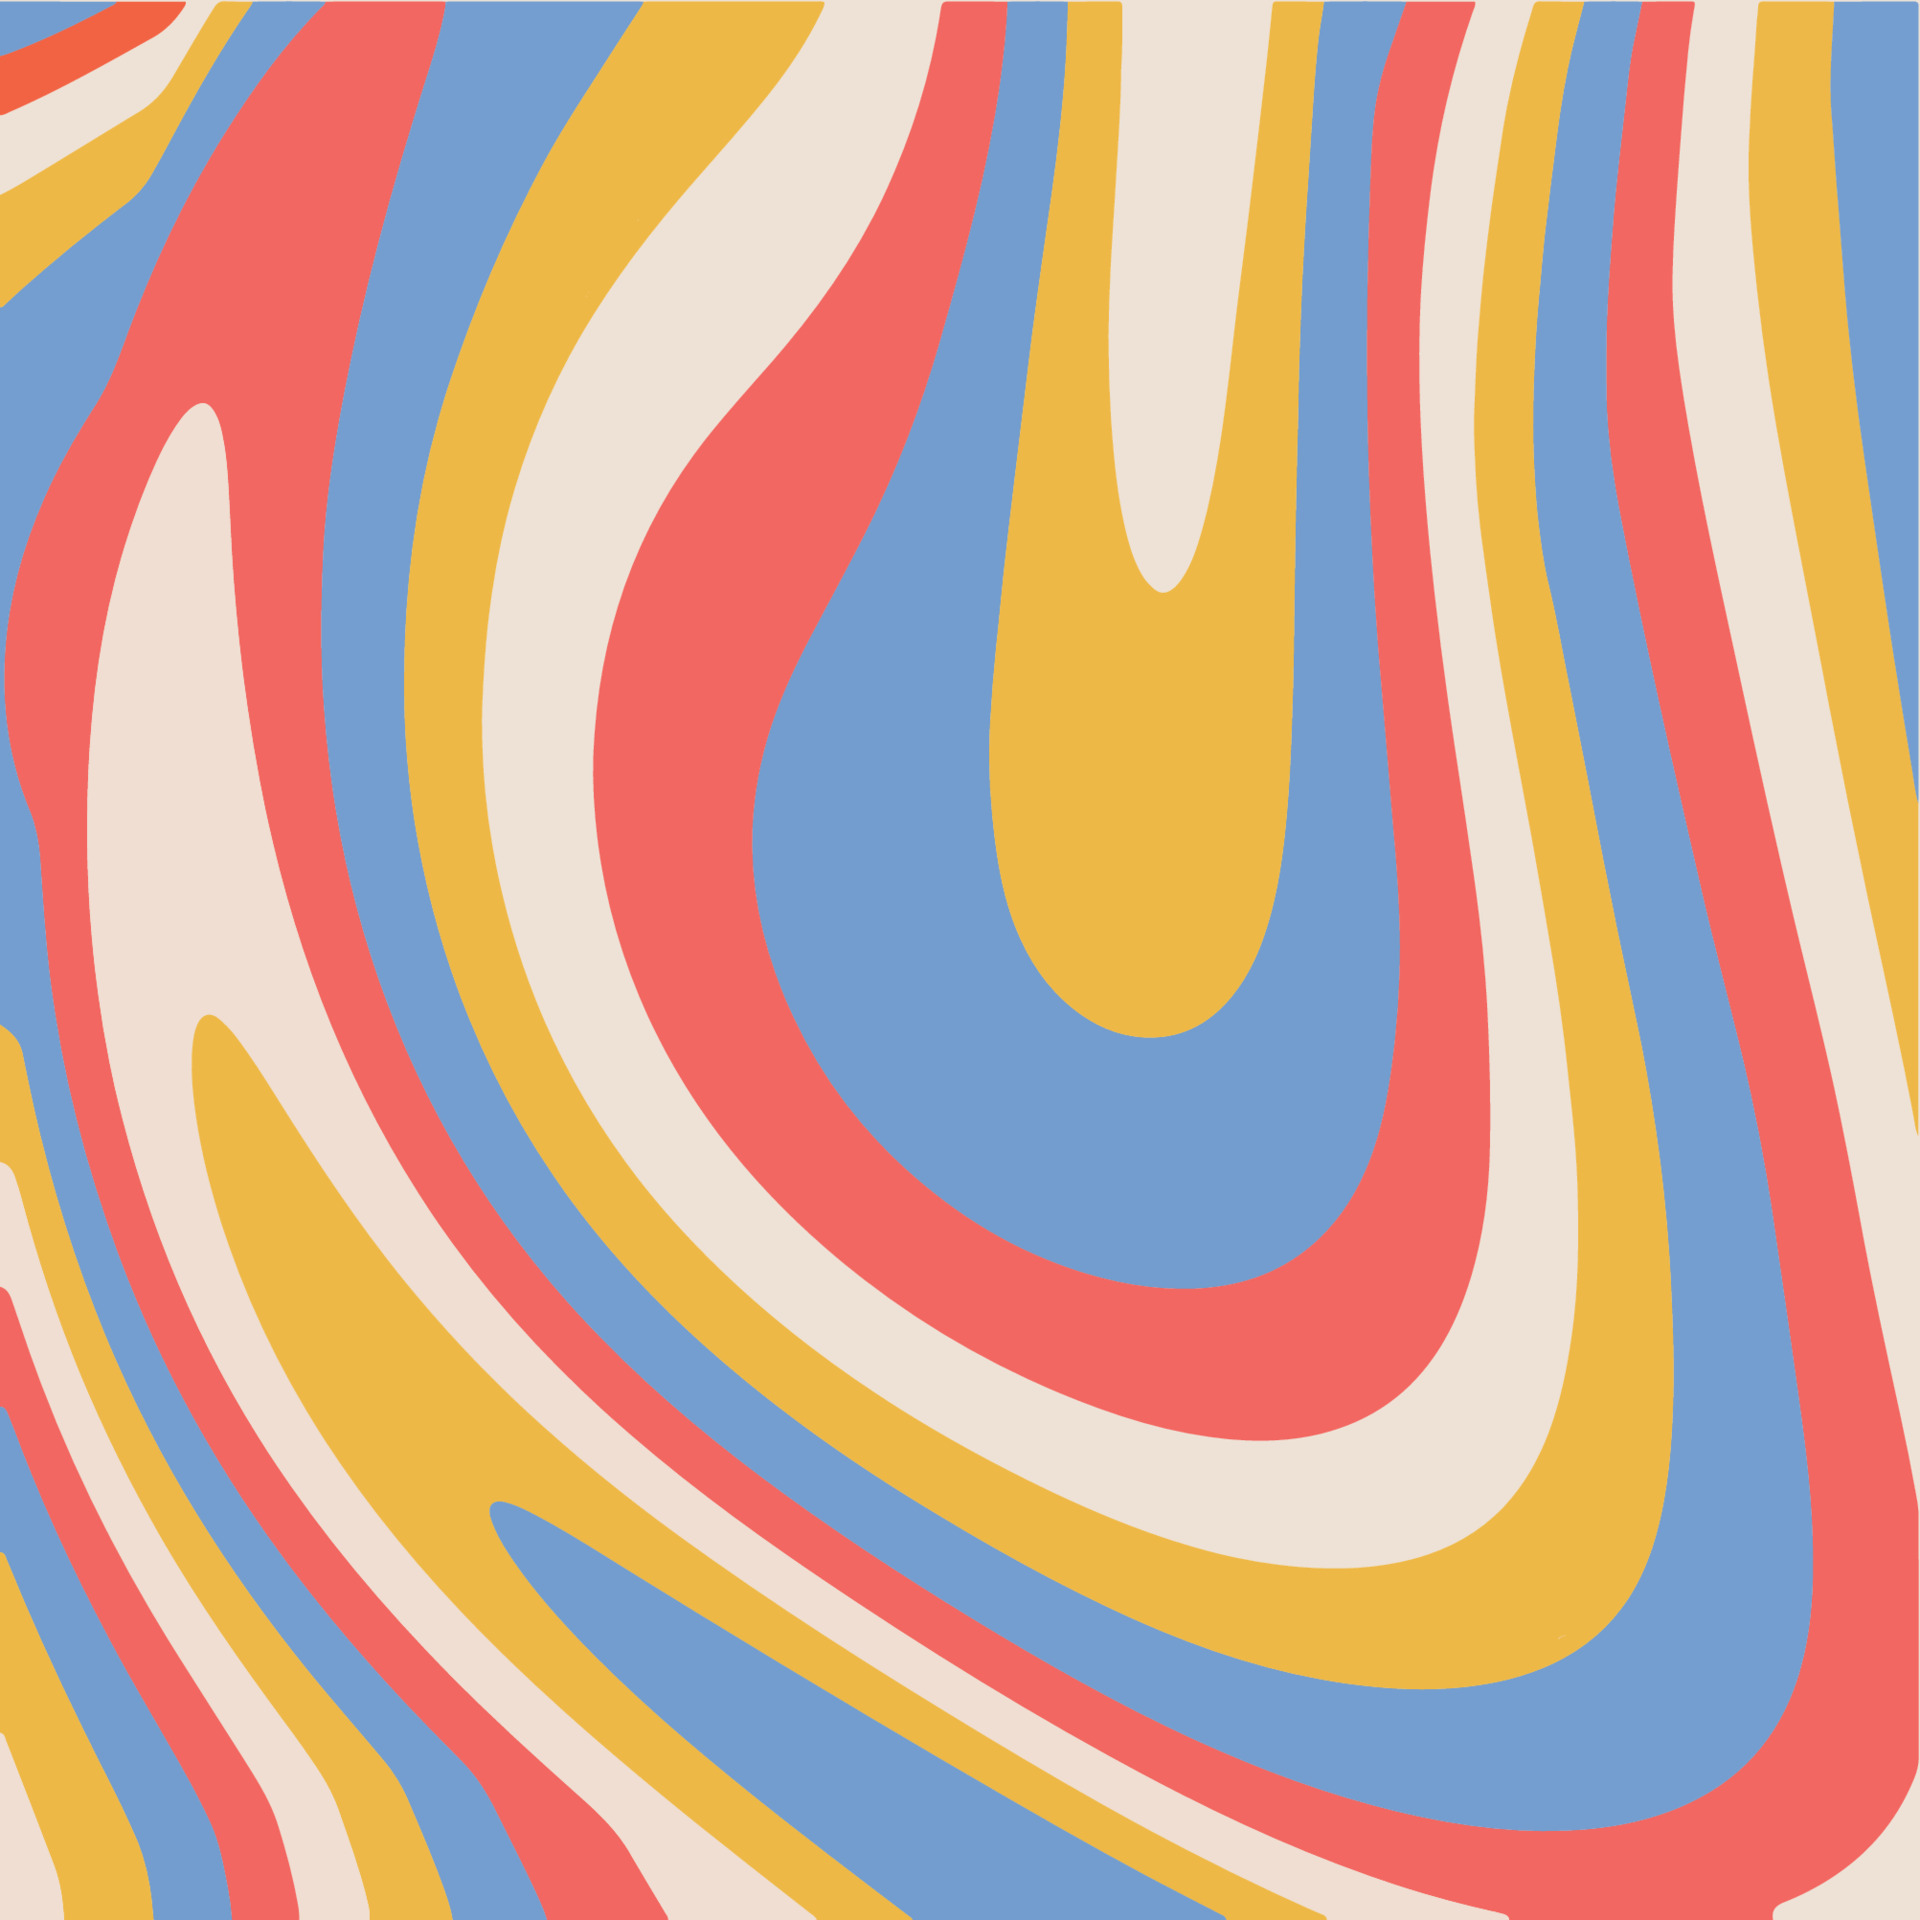 Bạn yêu thích phong cách Retro? Giấy dán tường Hippie thập niên 1960 với sọc thủy tinh siêu thực sẽ khiến bạn mê mẩn! Với những họa tiết và màu sắc đặc trưng, giấy dán tường này sẽ giúp cho không gian của bạn trở nên đặc biệt và độc đáo hơn. Hãy nhấn vào hình ảnh để khám phá thêm nhé!